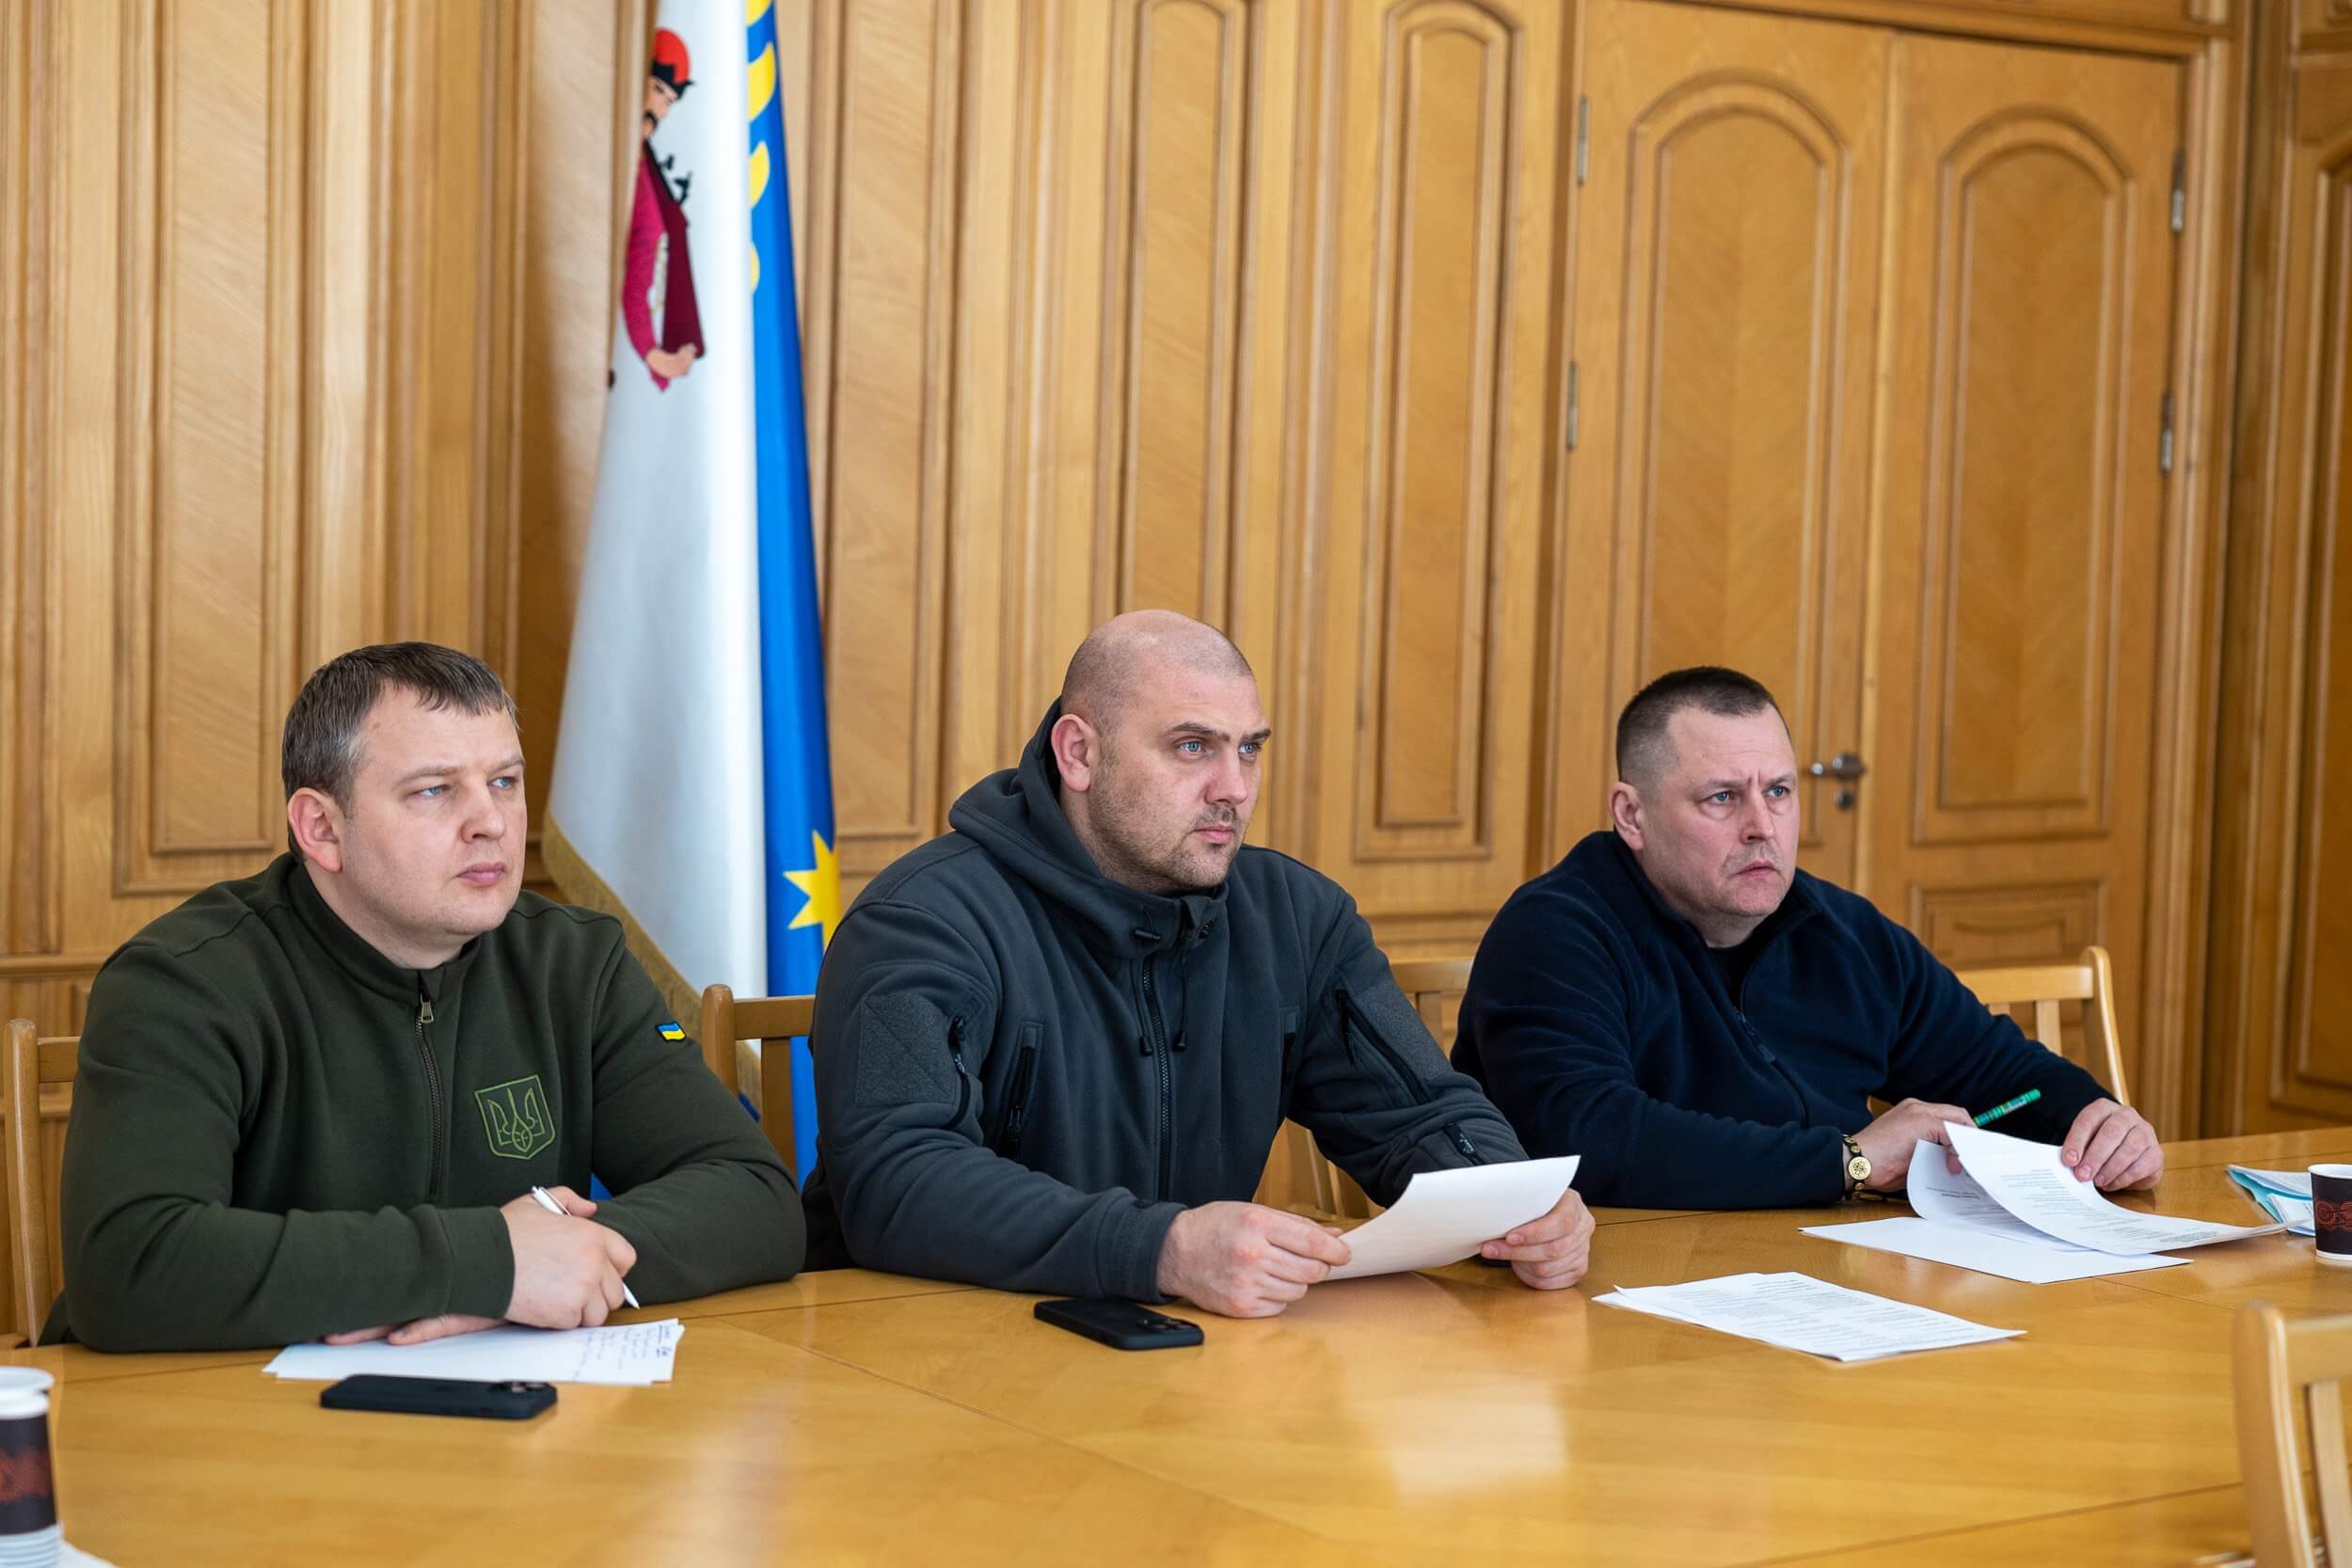 Керівники області та міста взяли участь у Конгресі місцевих та регіональних влад при Президентові України